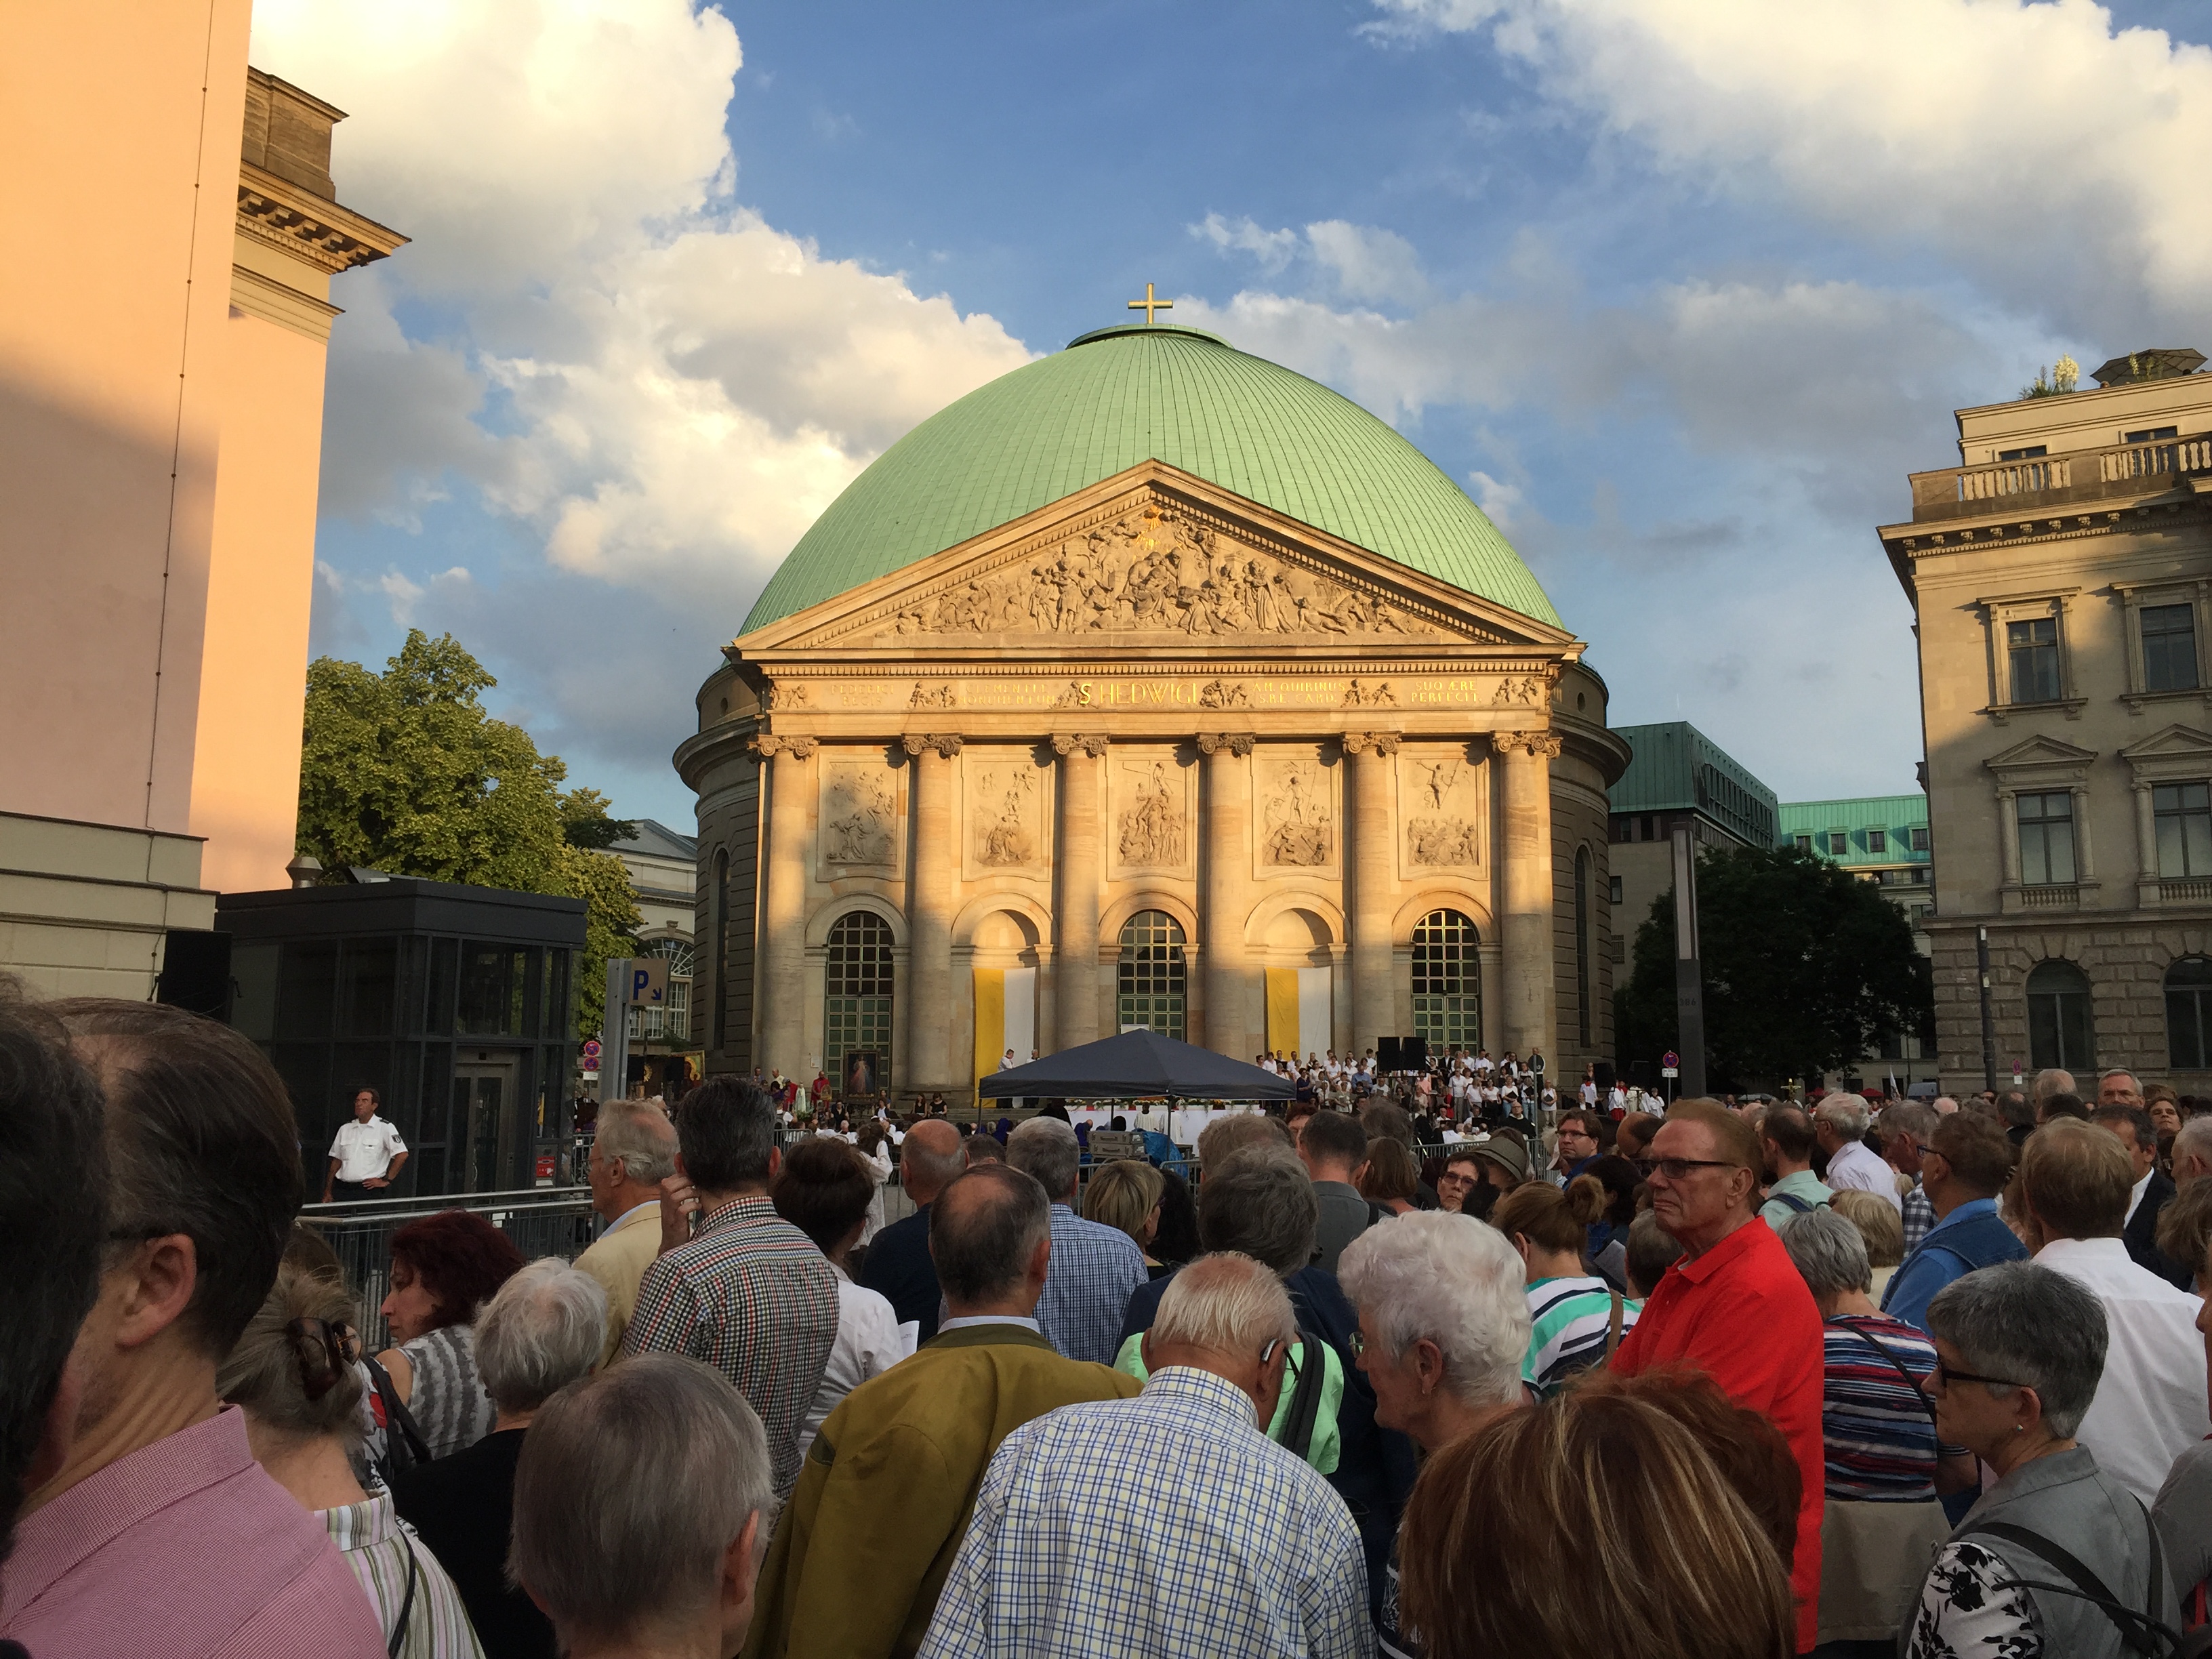 Ankunft auf dem Bebelplatz vor der St. Hedwigskathedrale (Foto: Fides Mahrla)